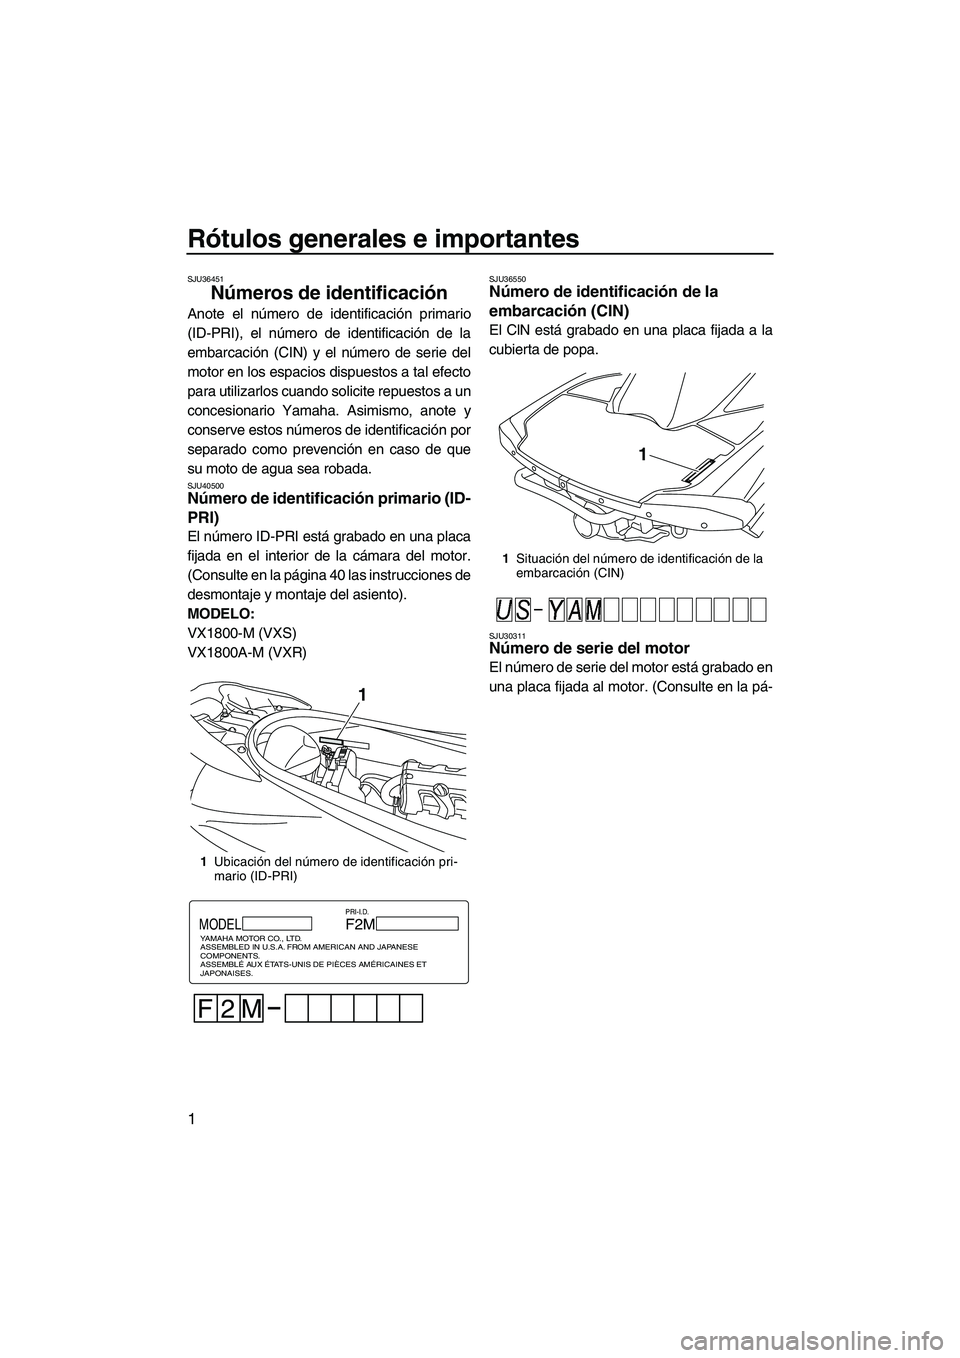 YAMAHA VXR 2013  Manuale de Empleo (in Spanish) Rótulos generales e importantes
1
SJU36451
Números de identificación 
Anote el número de identificación primario
(ID-PRI), el número de identificación de la
embarcación (CIN) y el número de s